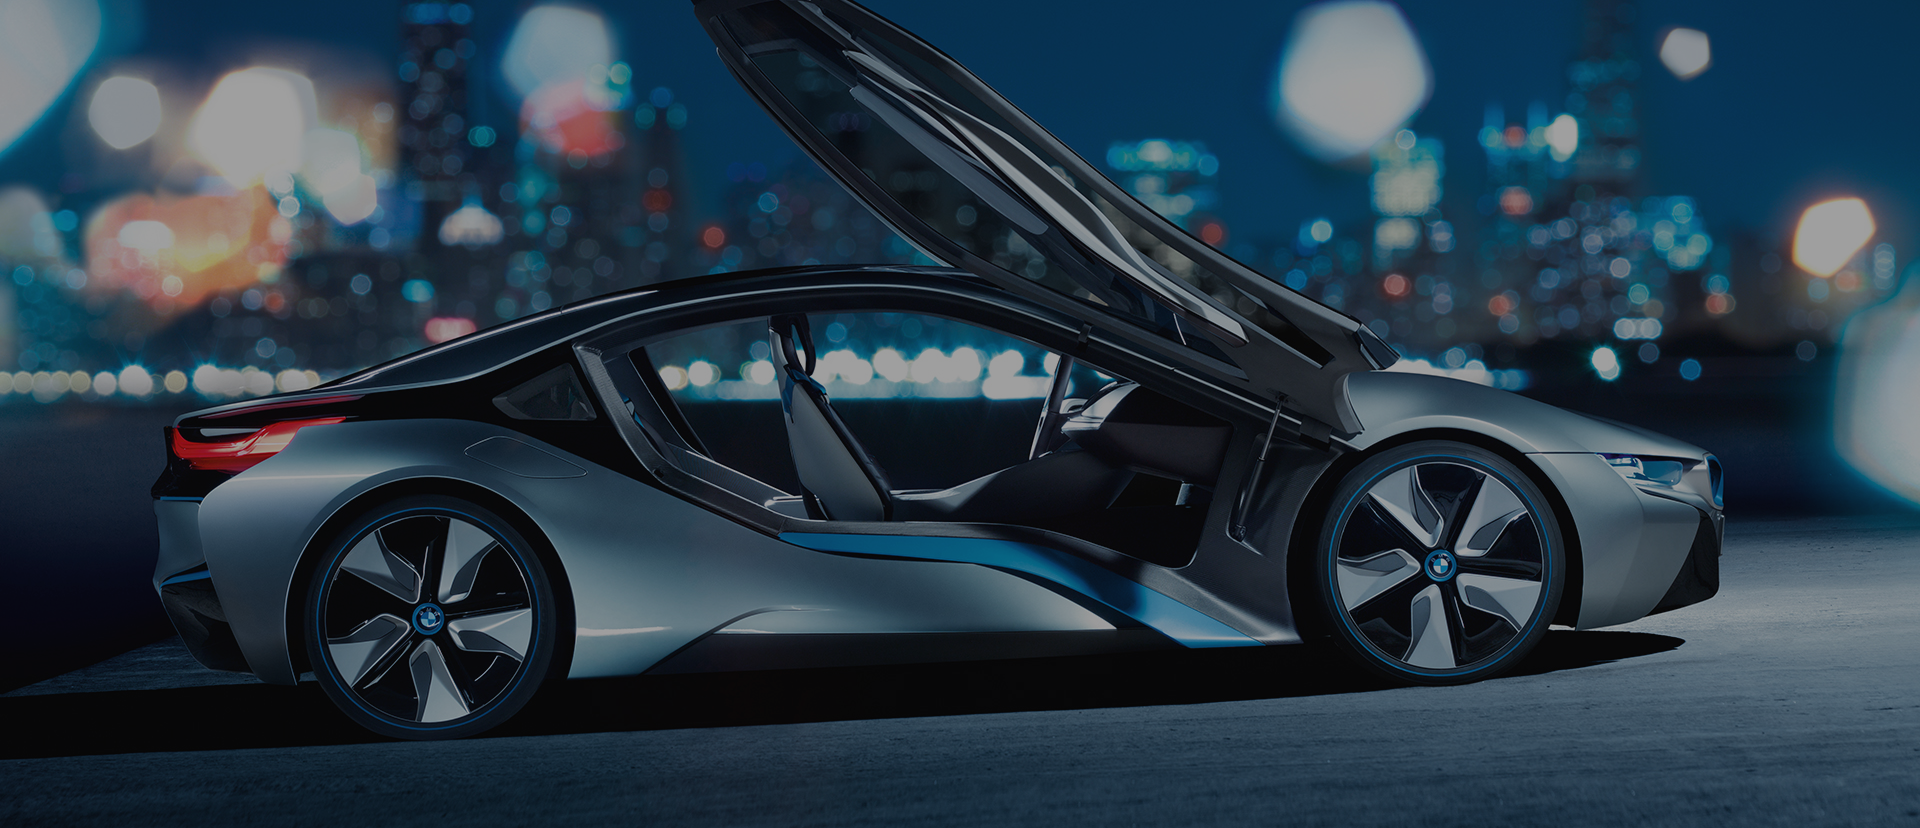 BMW i. Die Zukunft der Mobilität beginnt jetzt.